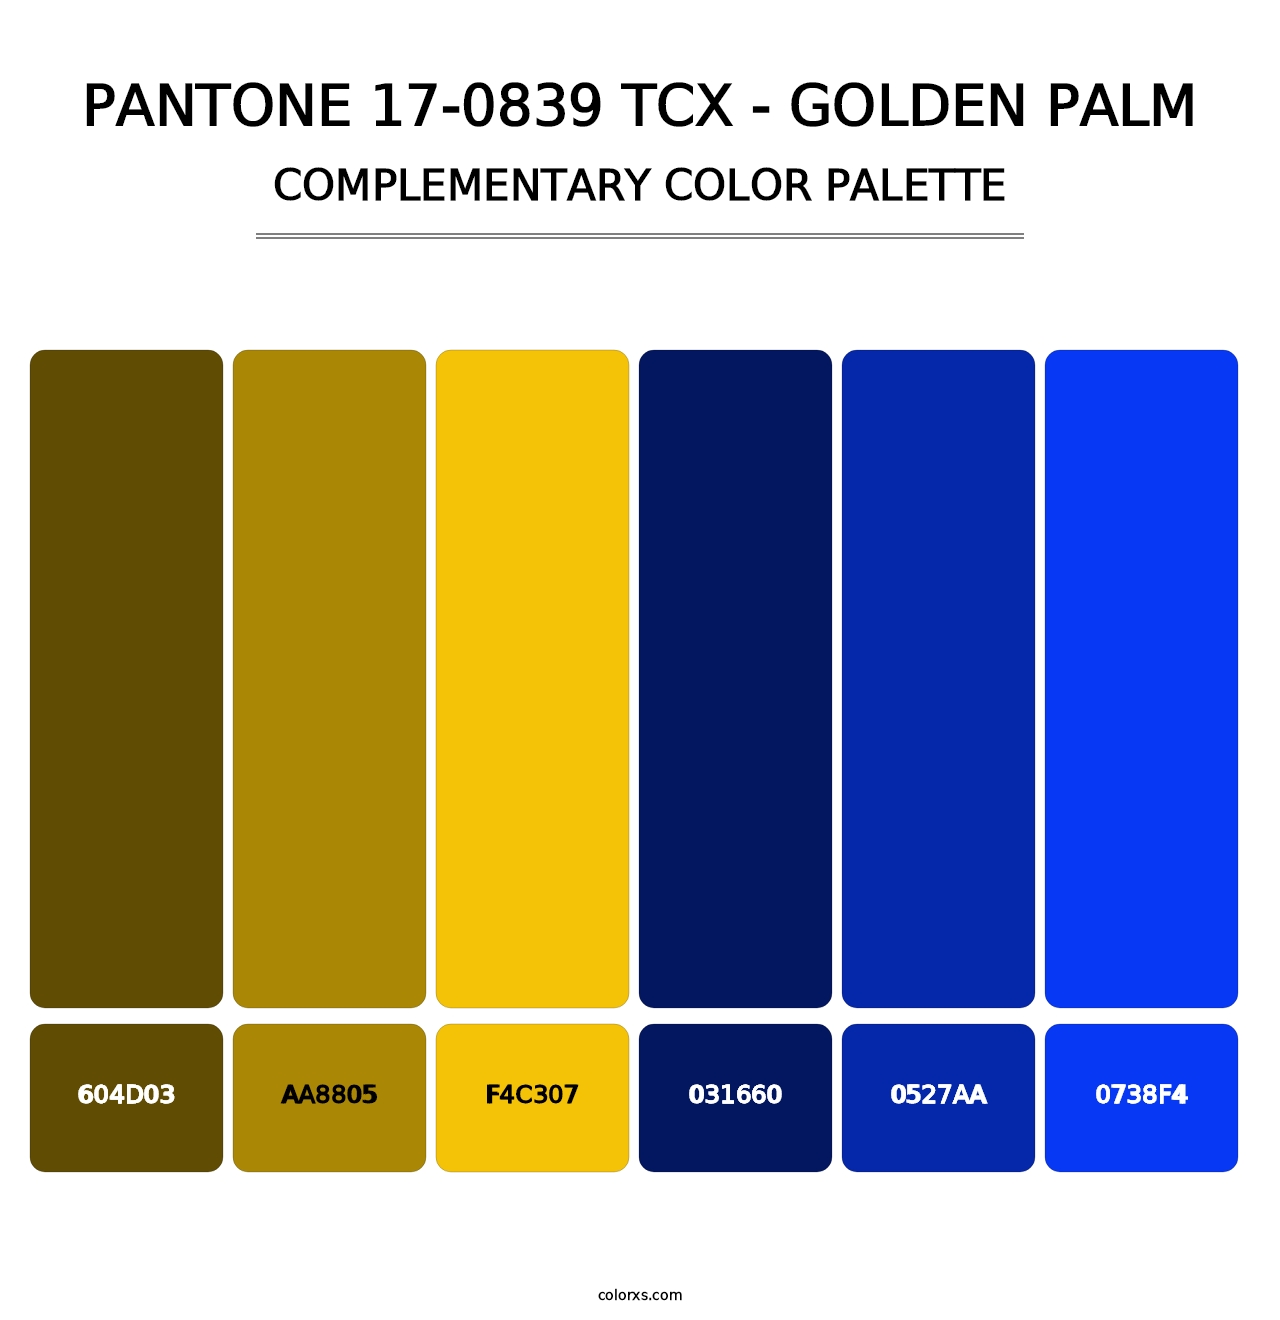 PANTONE 17-0839 TCX - Golden Palm - Complementary Color Palette